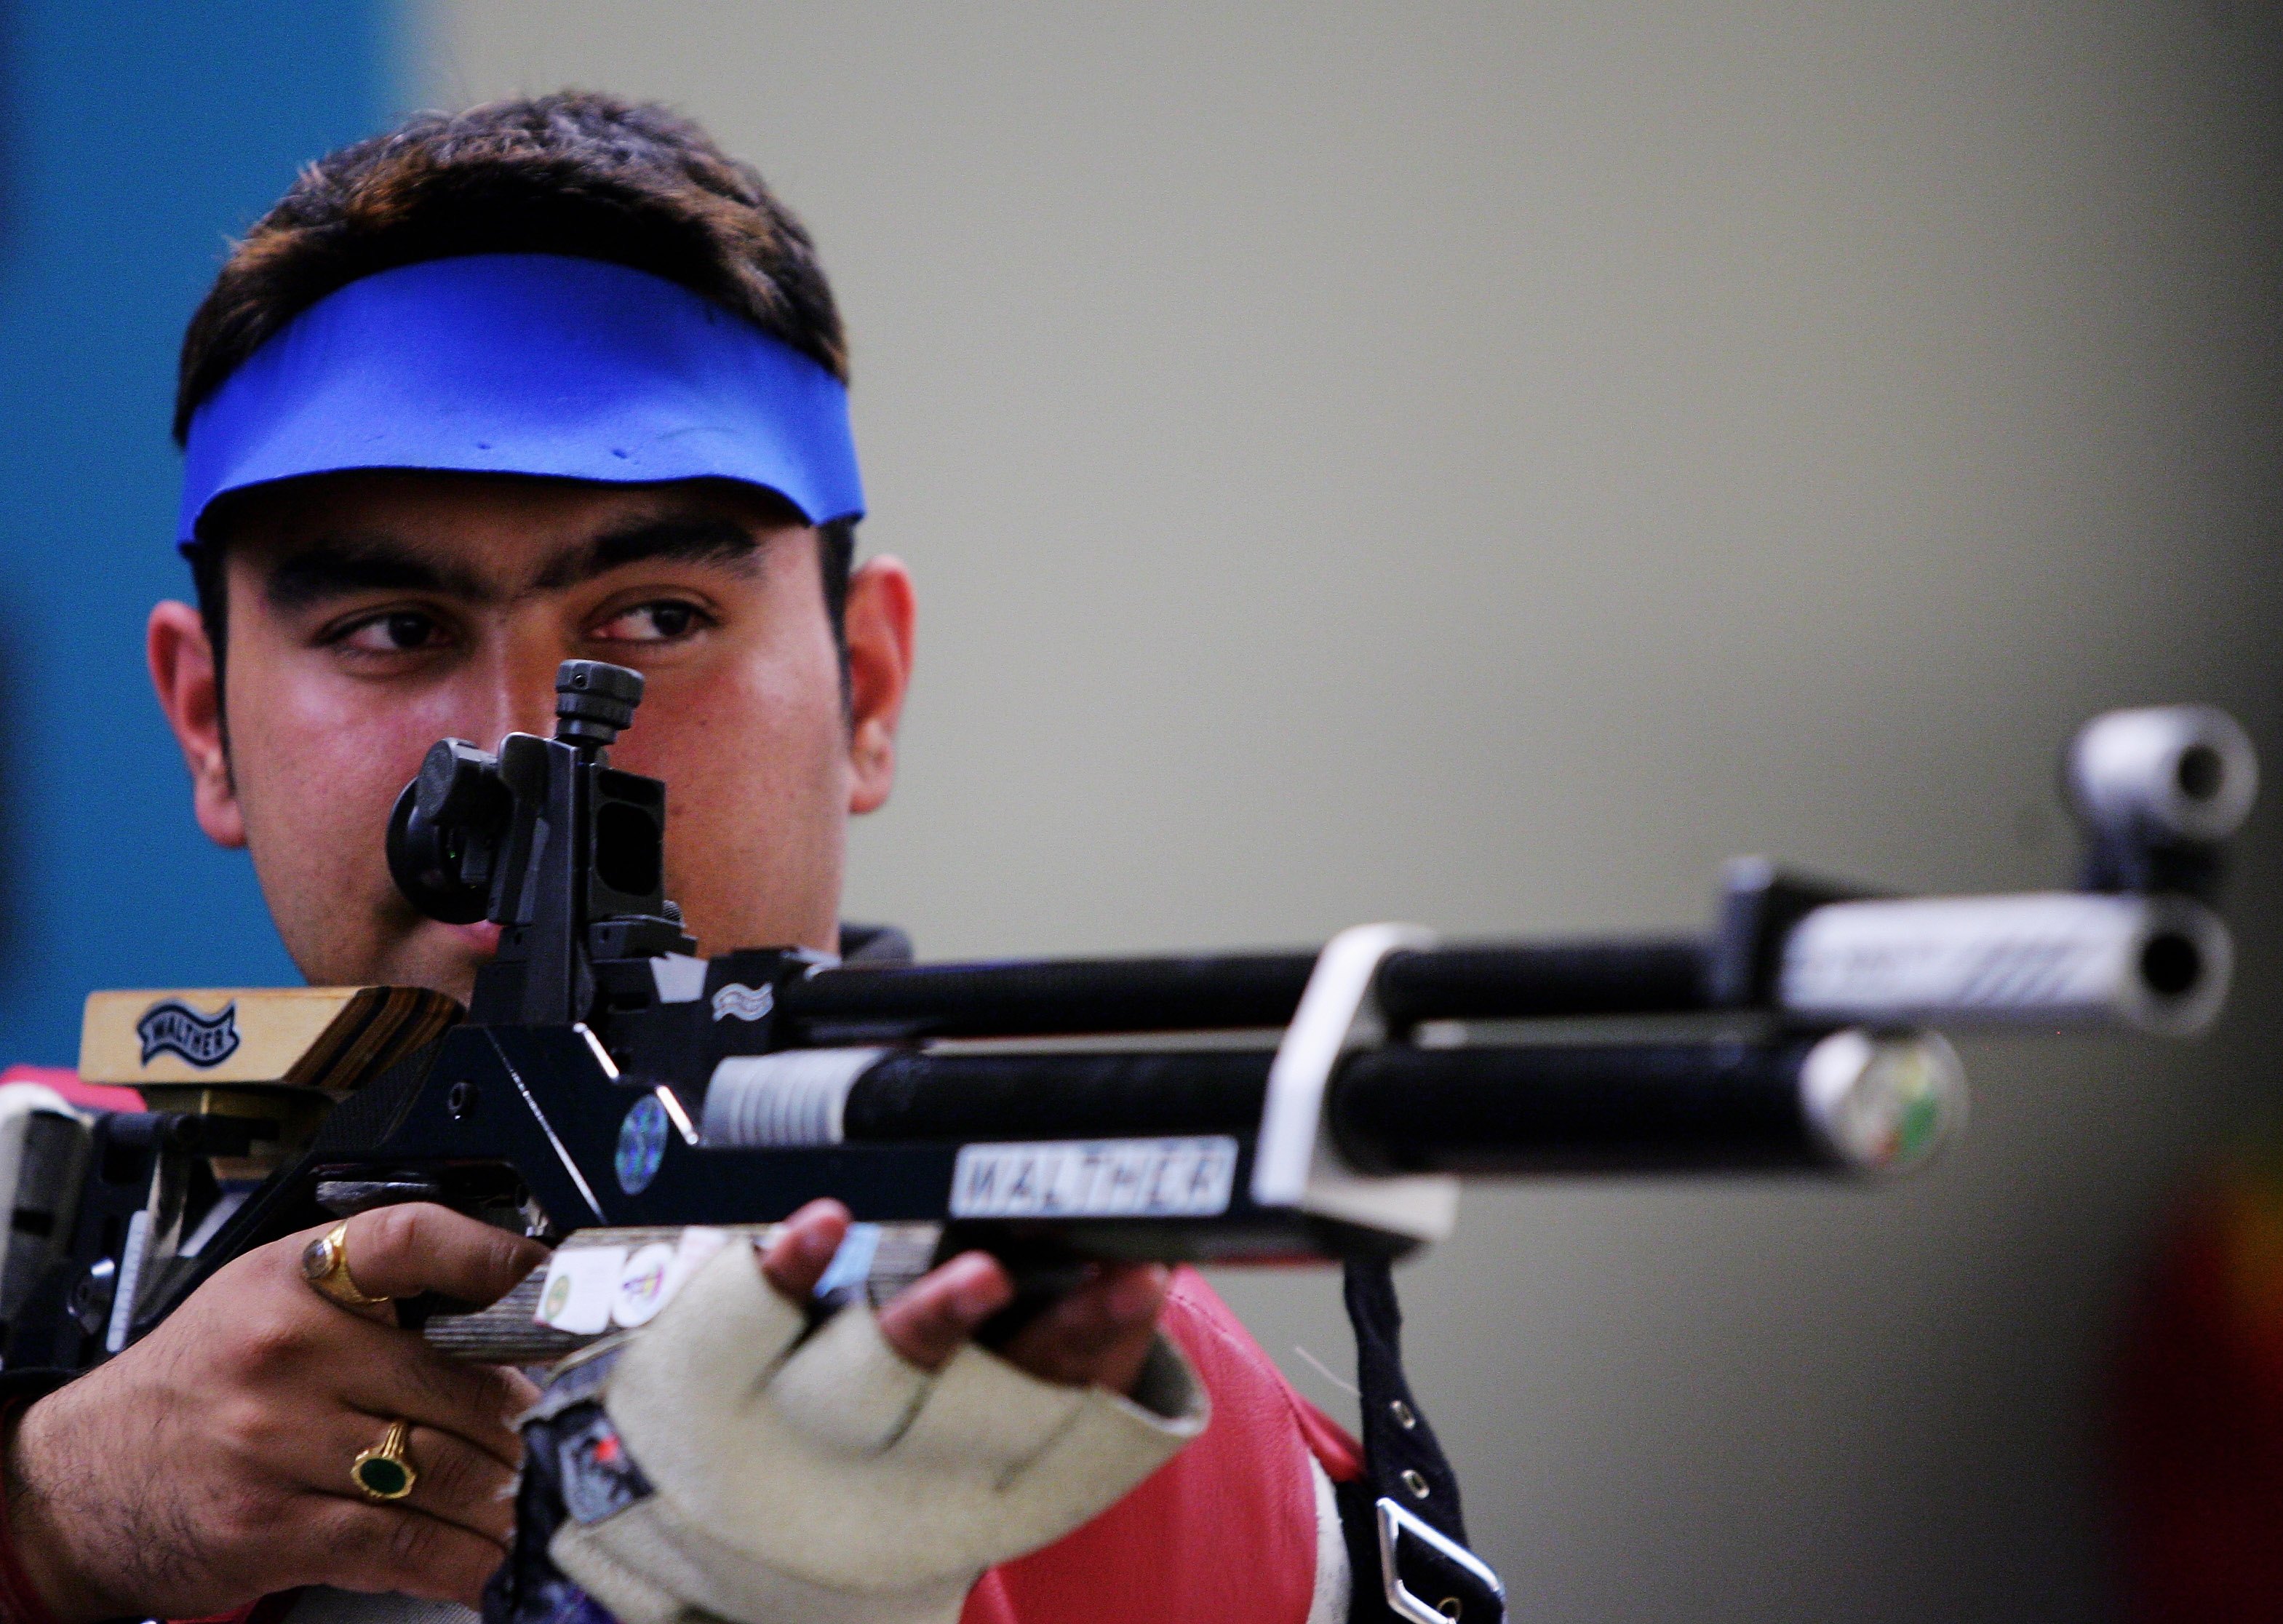 Anil Kumar wins 10m Air Rifle as Gagan Narang misses out on medal